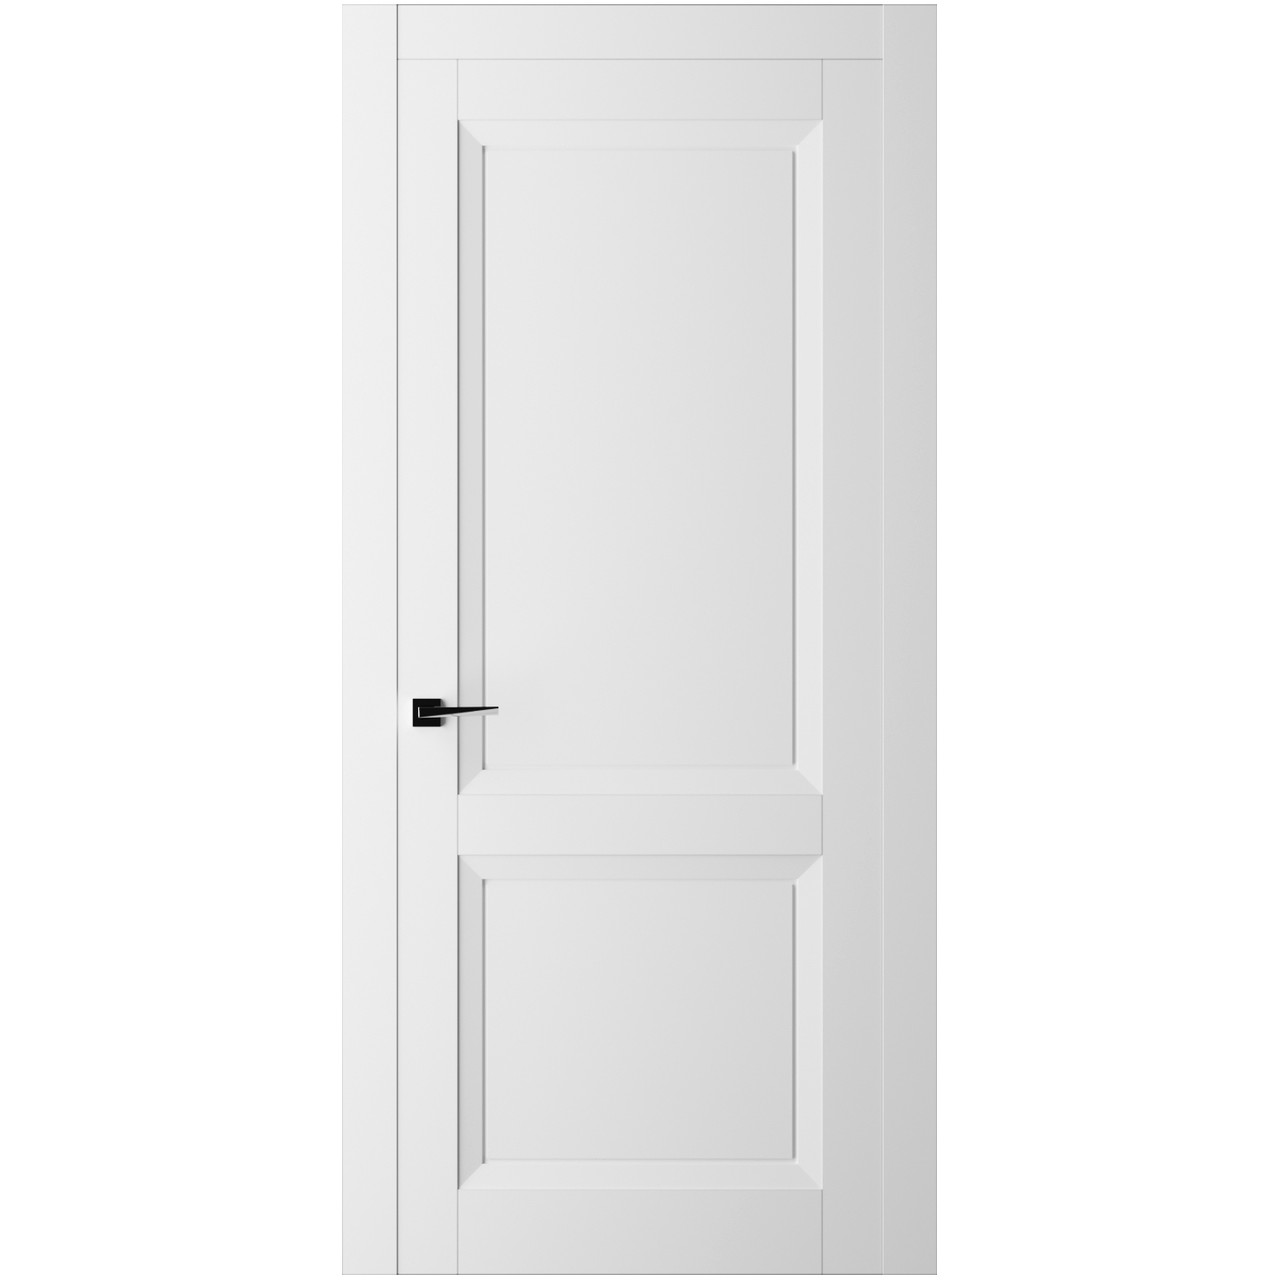 Дверь межкомнатная Ликорн Френч Кат ДКФКГ.2 2100*600*40мм (без замков и петель, с телескопической коробкой и